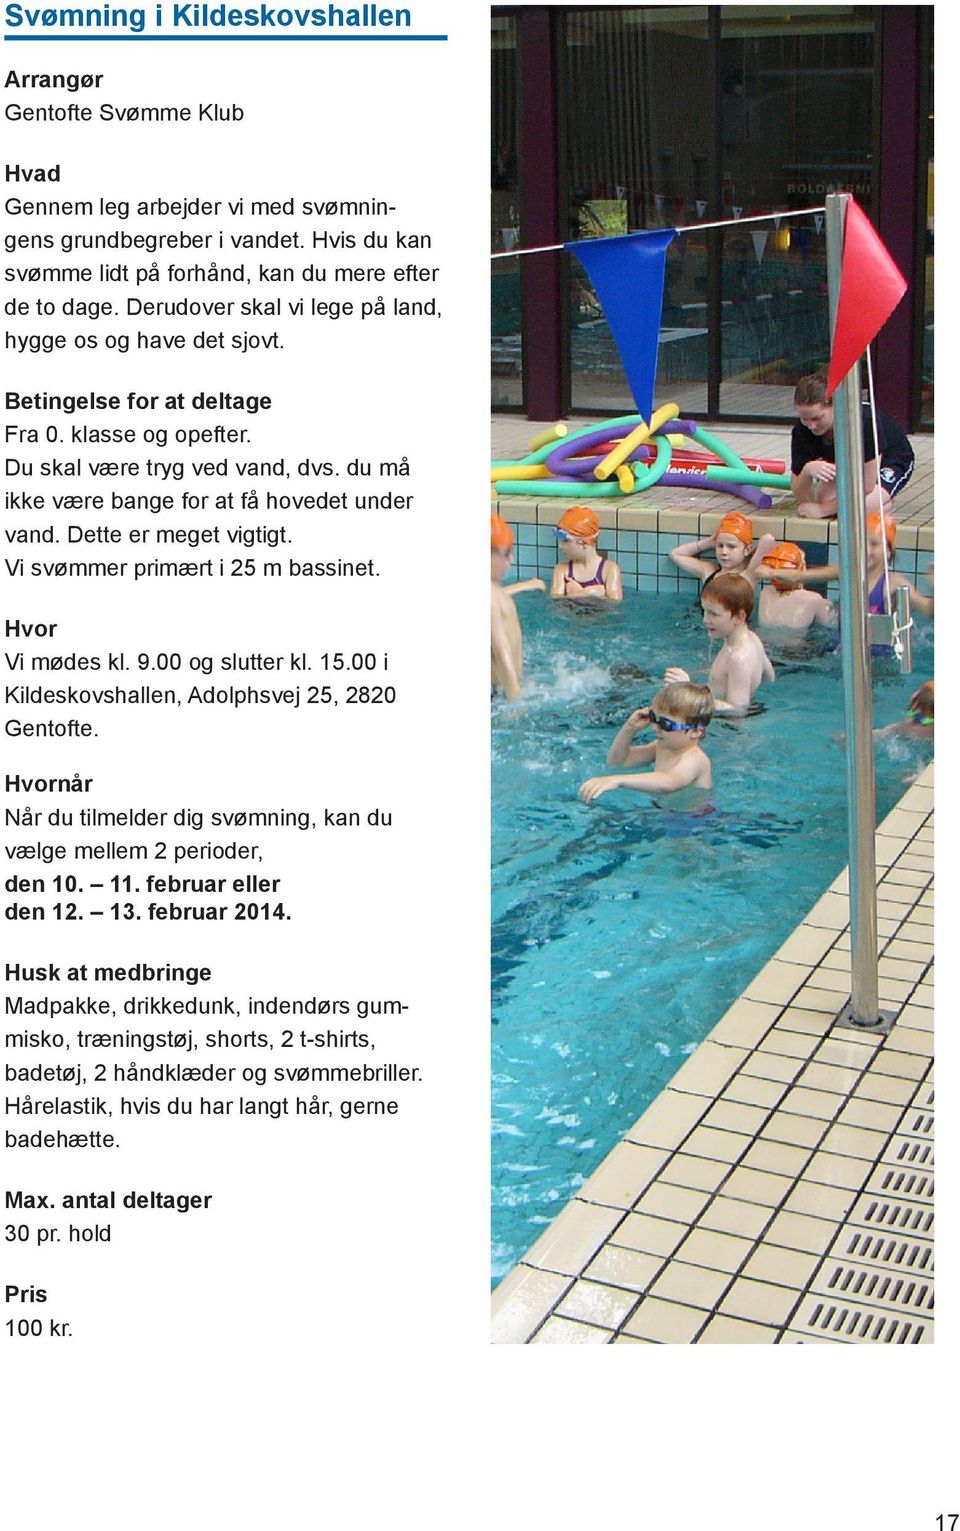 Dette er meget vigtigt. Vi svømmer primært i 25 m bassinet. Vi mødes kl. 9.00 og slutter kl. 15.00 i Kildeskovshallen, Adolphsvej 25, 2820 Gentofte.